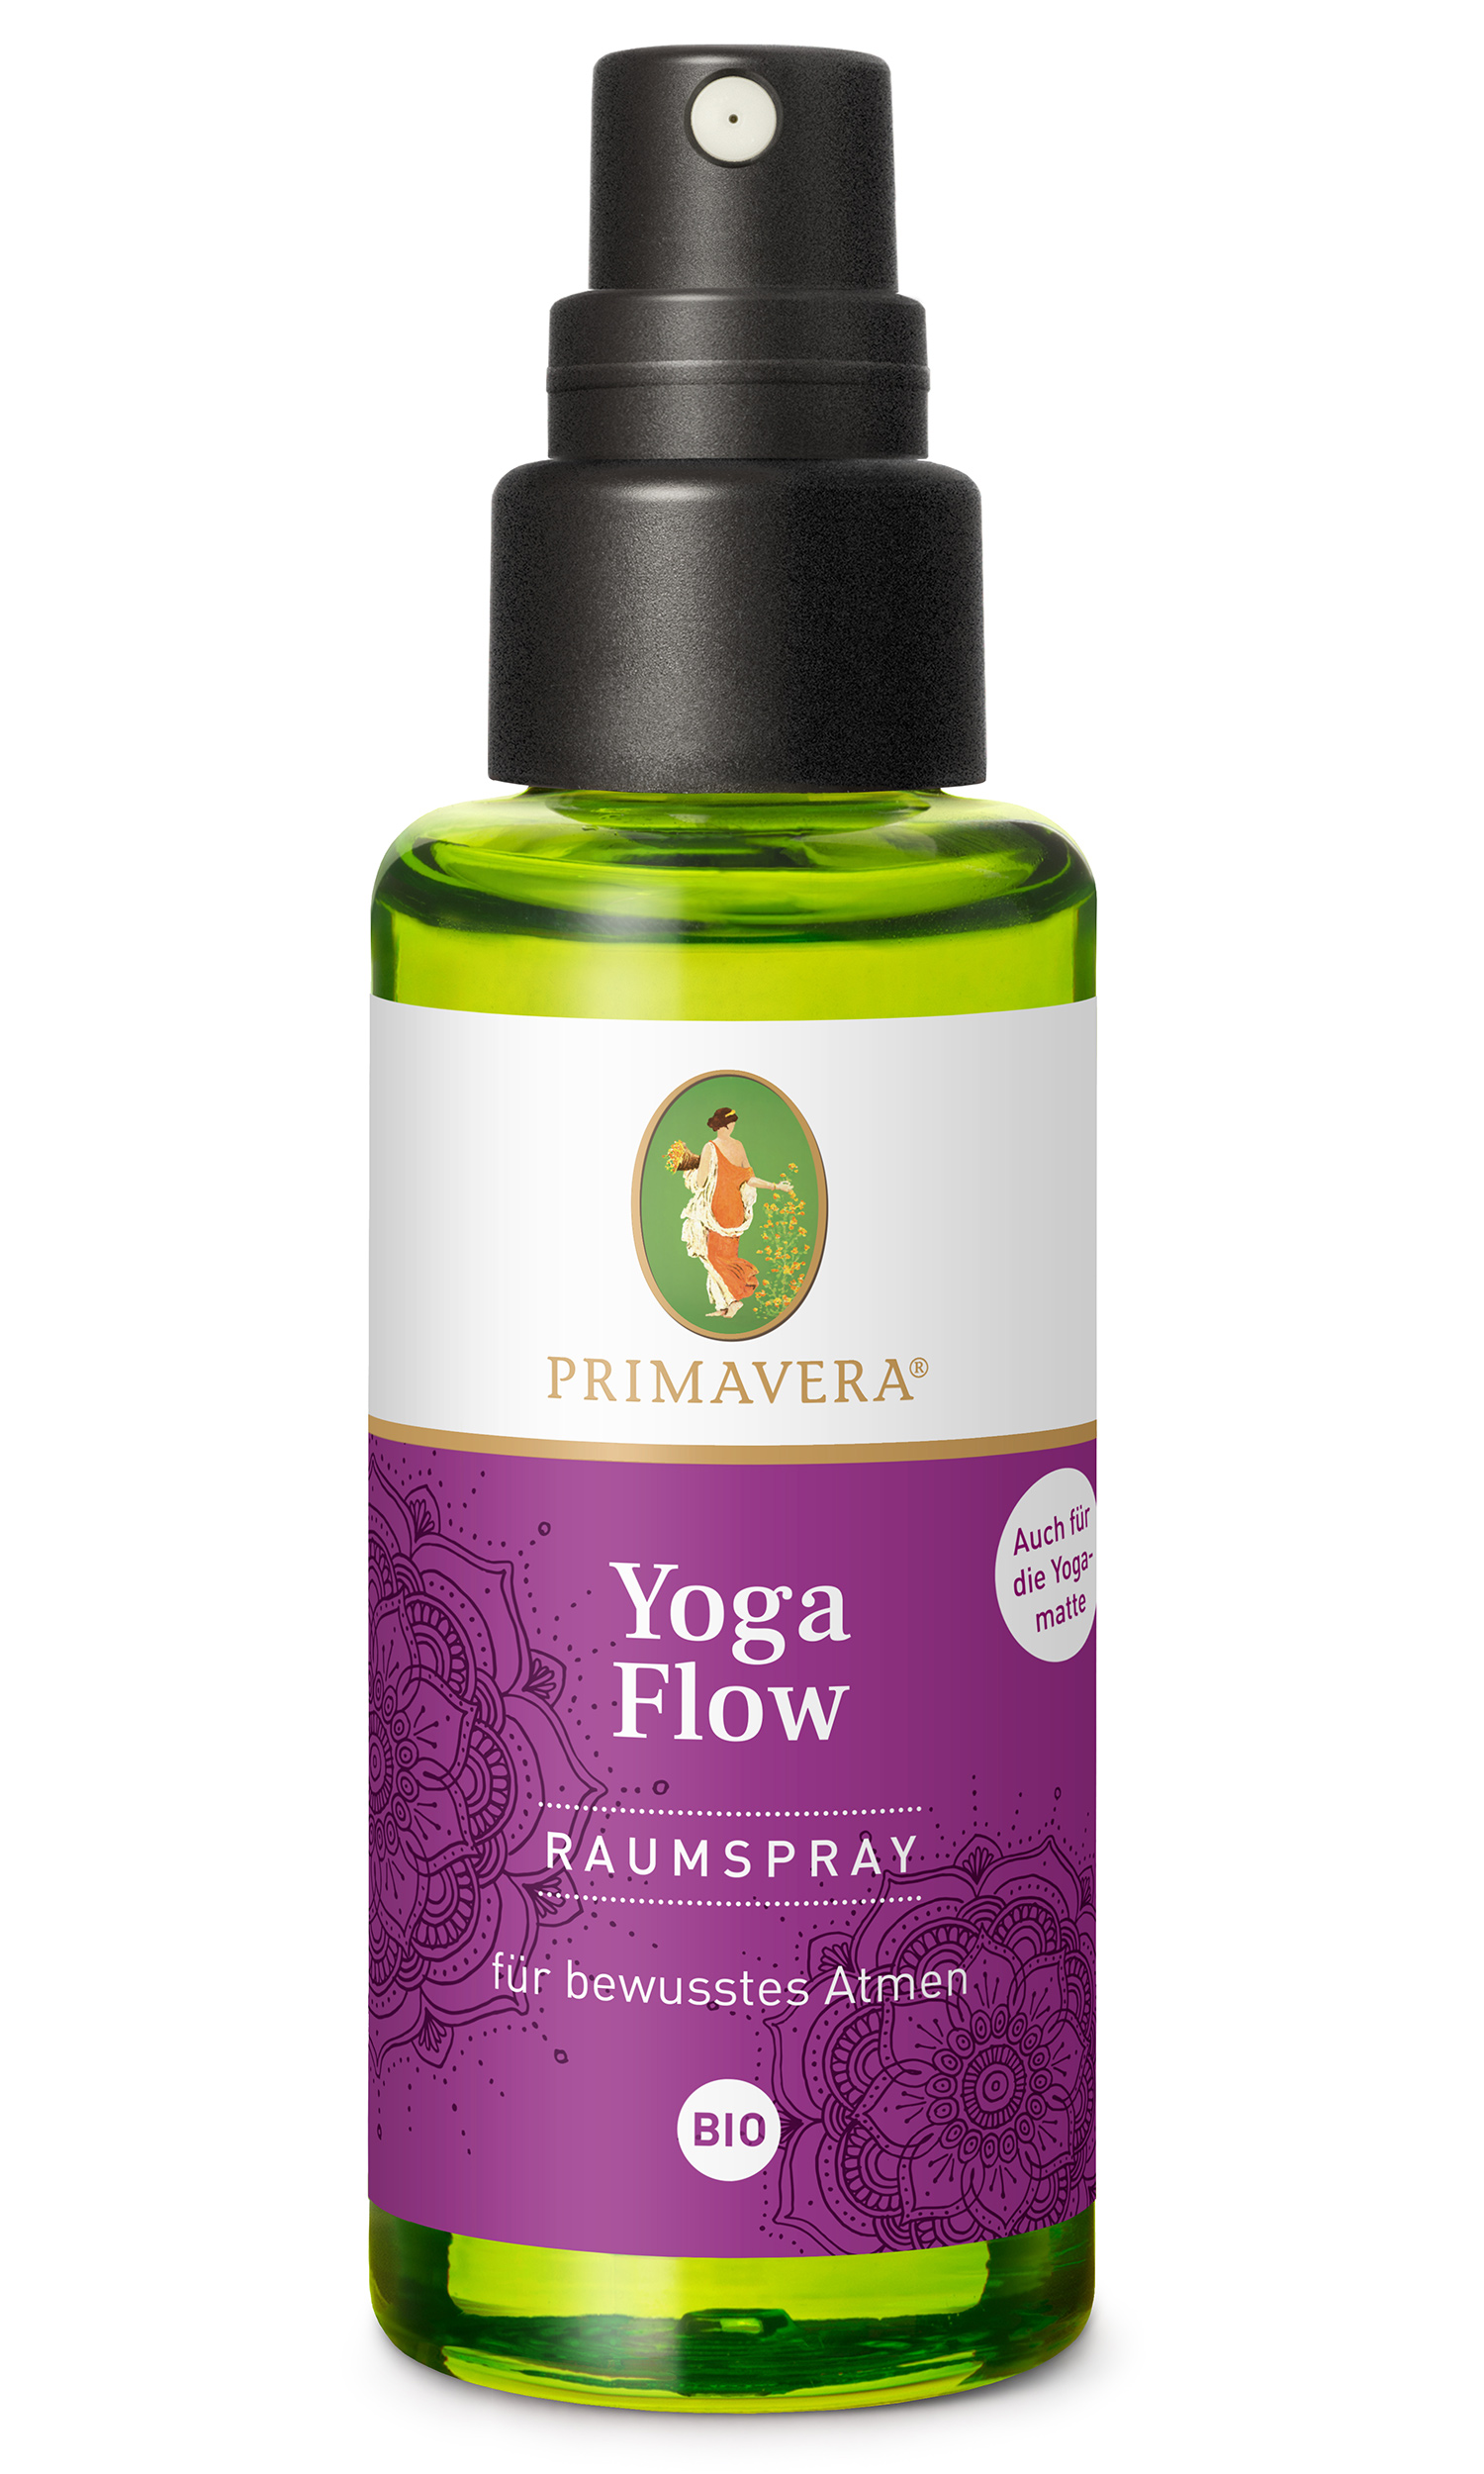 YOGISHOP | Bio Yogaflow Raumspray, 50 ml | Yoga, Yogamatten & Yoga-Zubehör